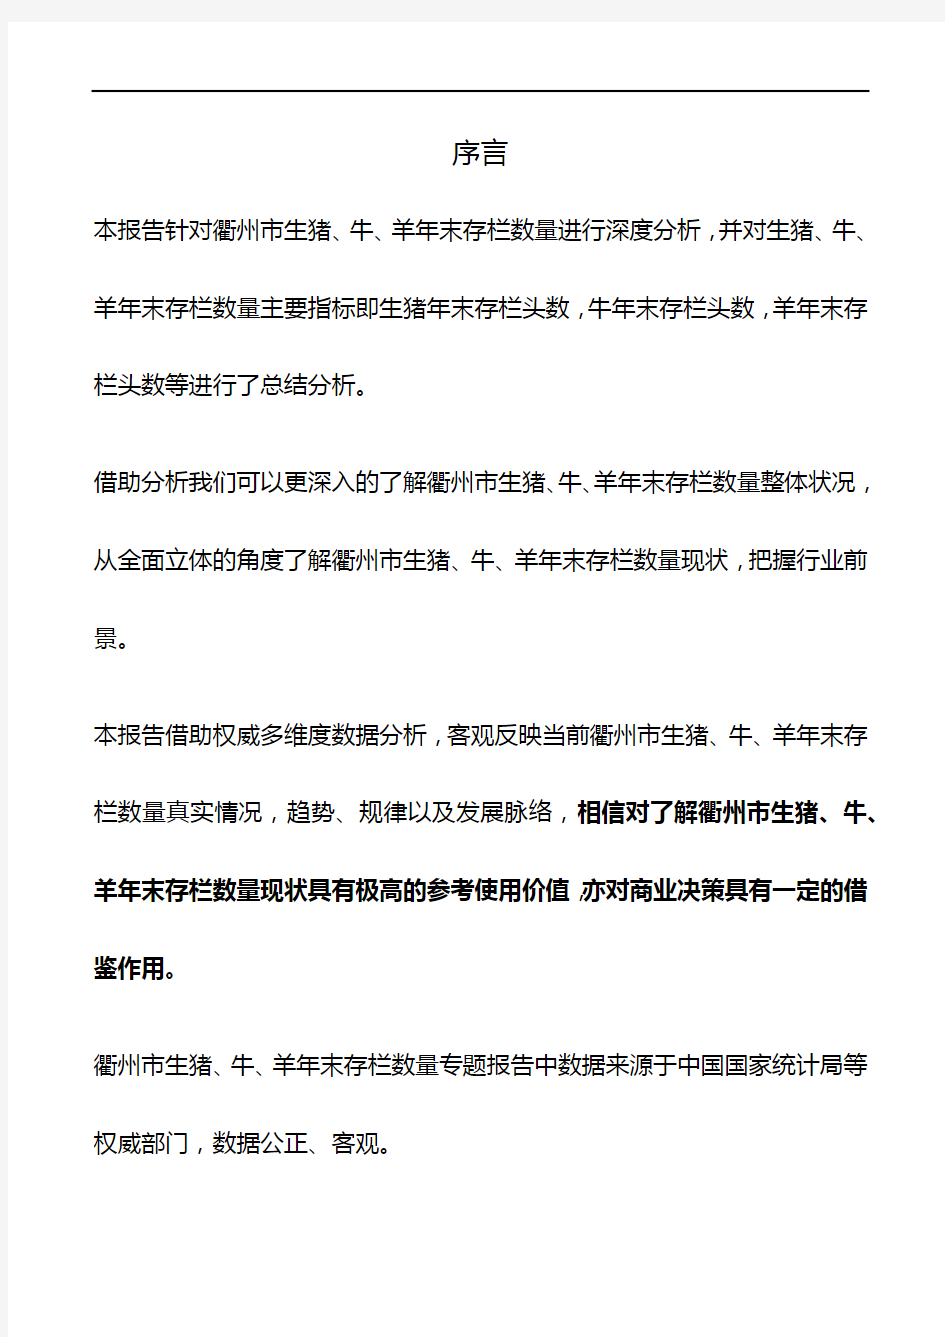 浙江省衢州市生猪、牛、羊年末存栏数量数据专题报告2019版